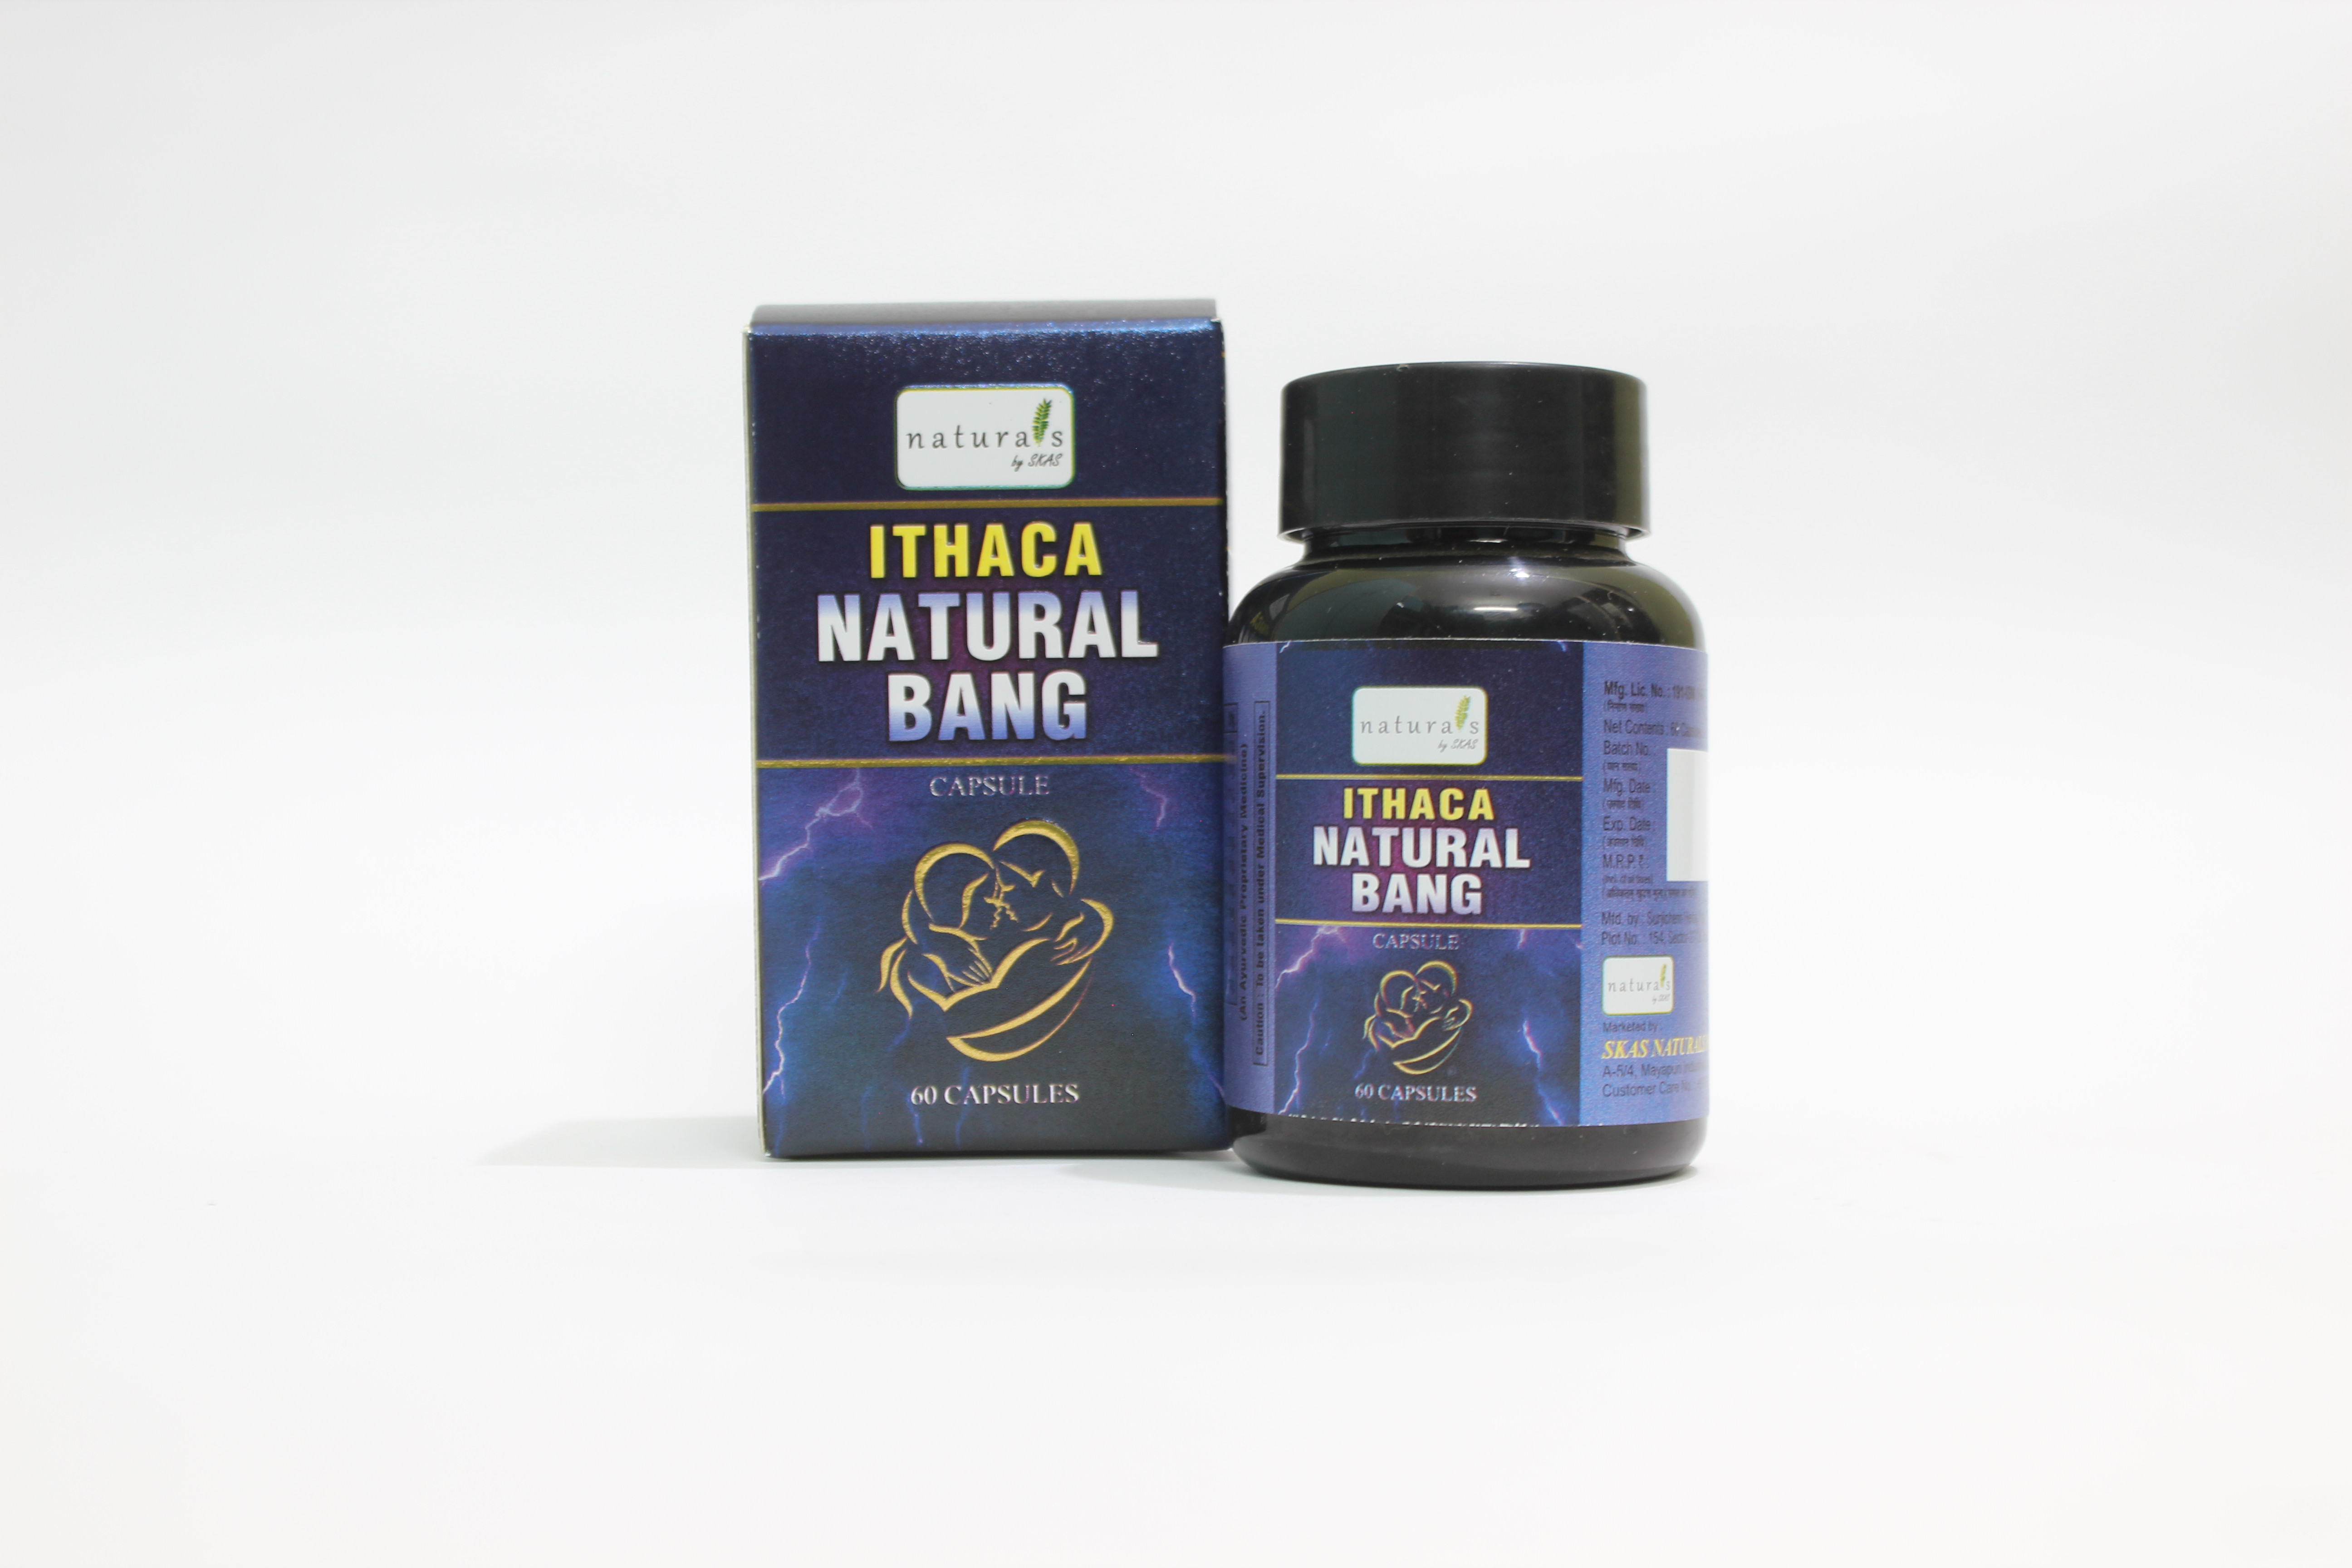 Buy Natural Bang Capsules at Best Price Online